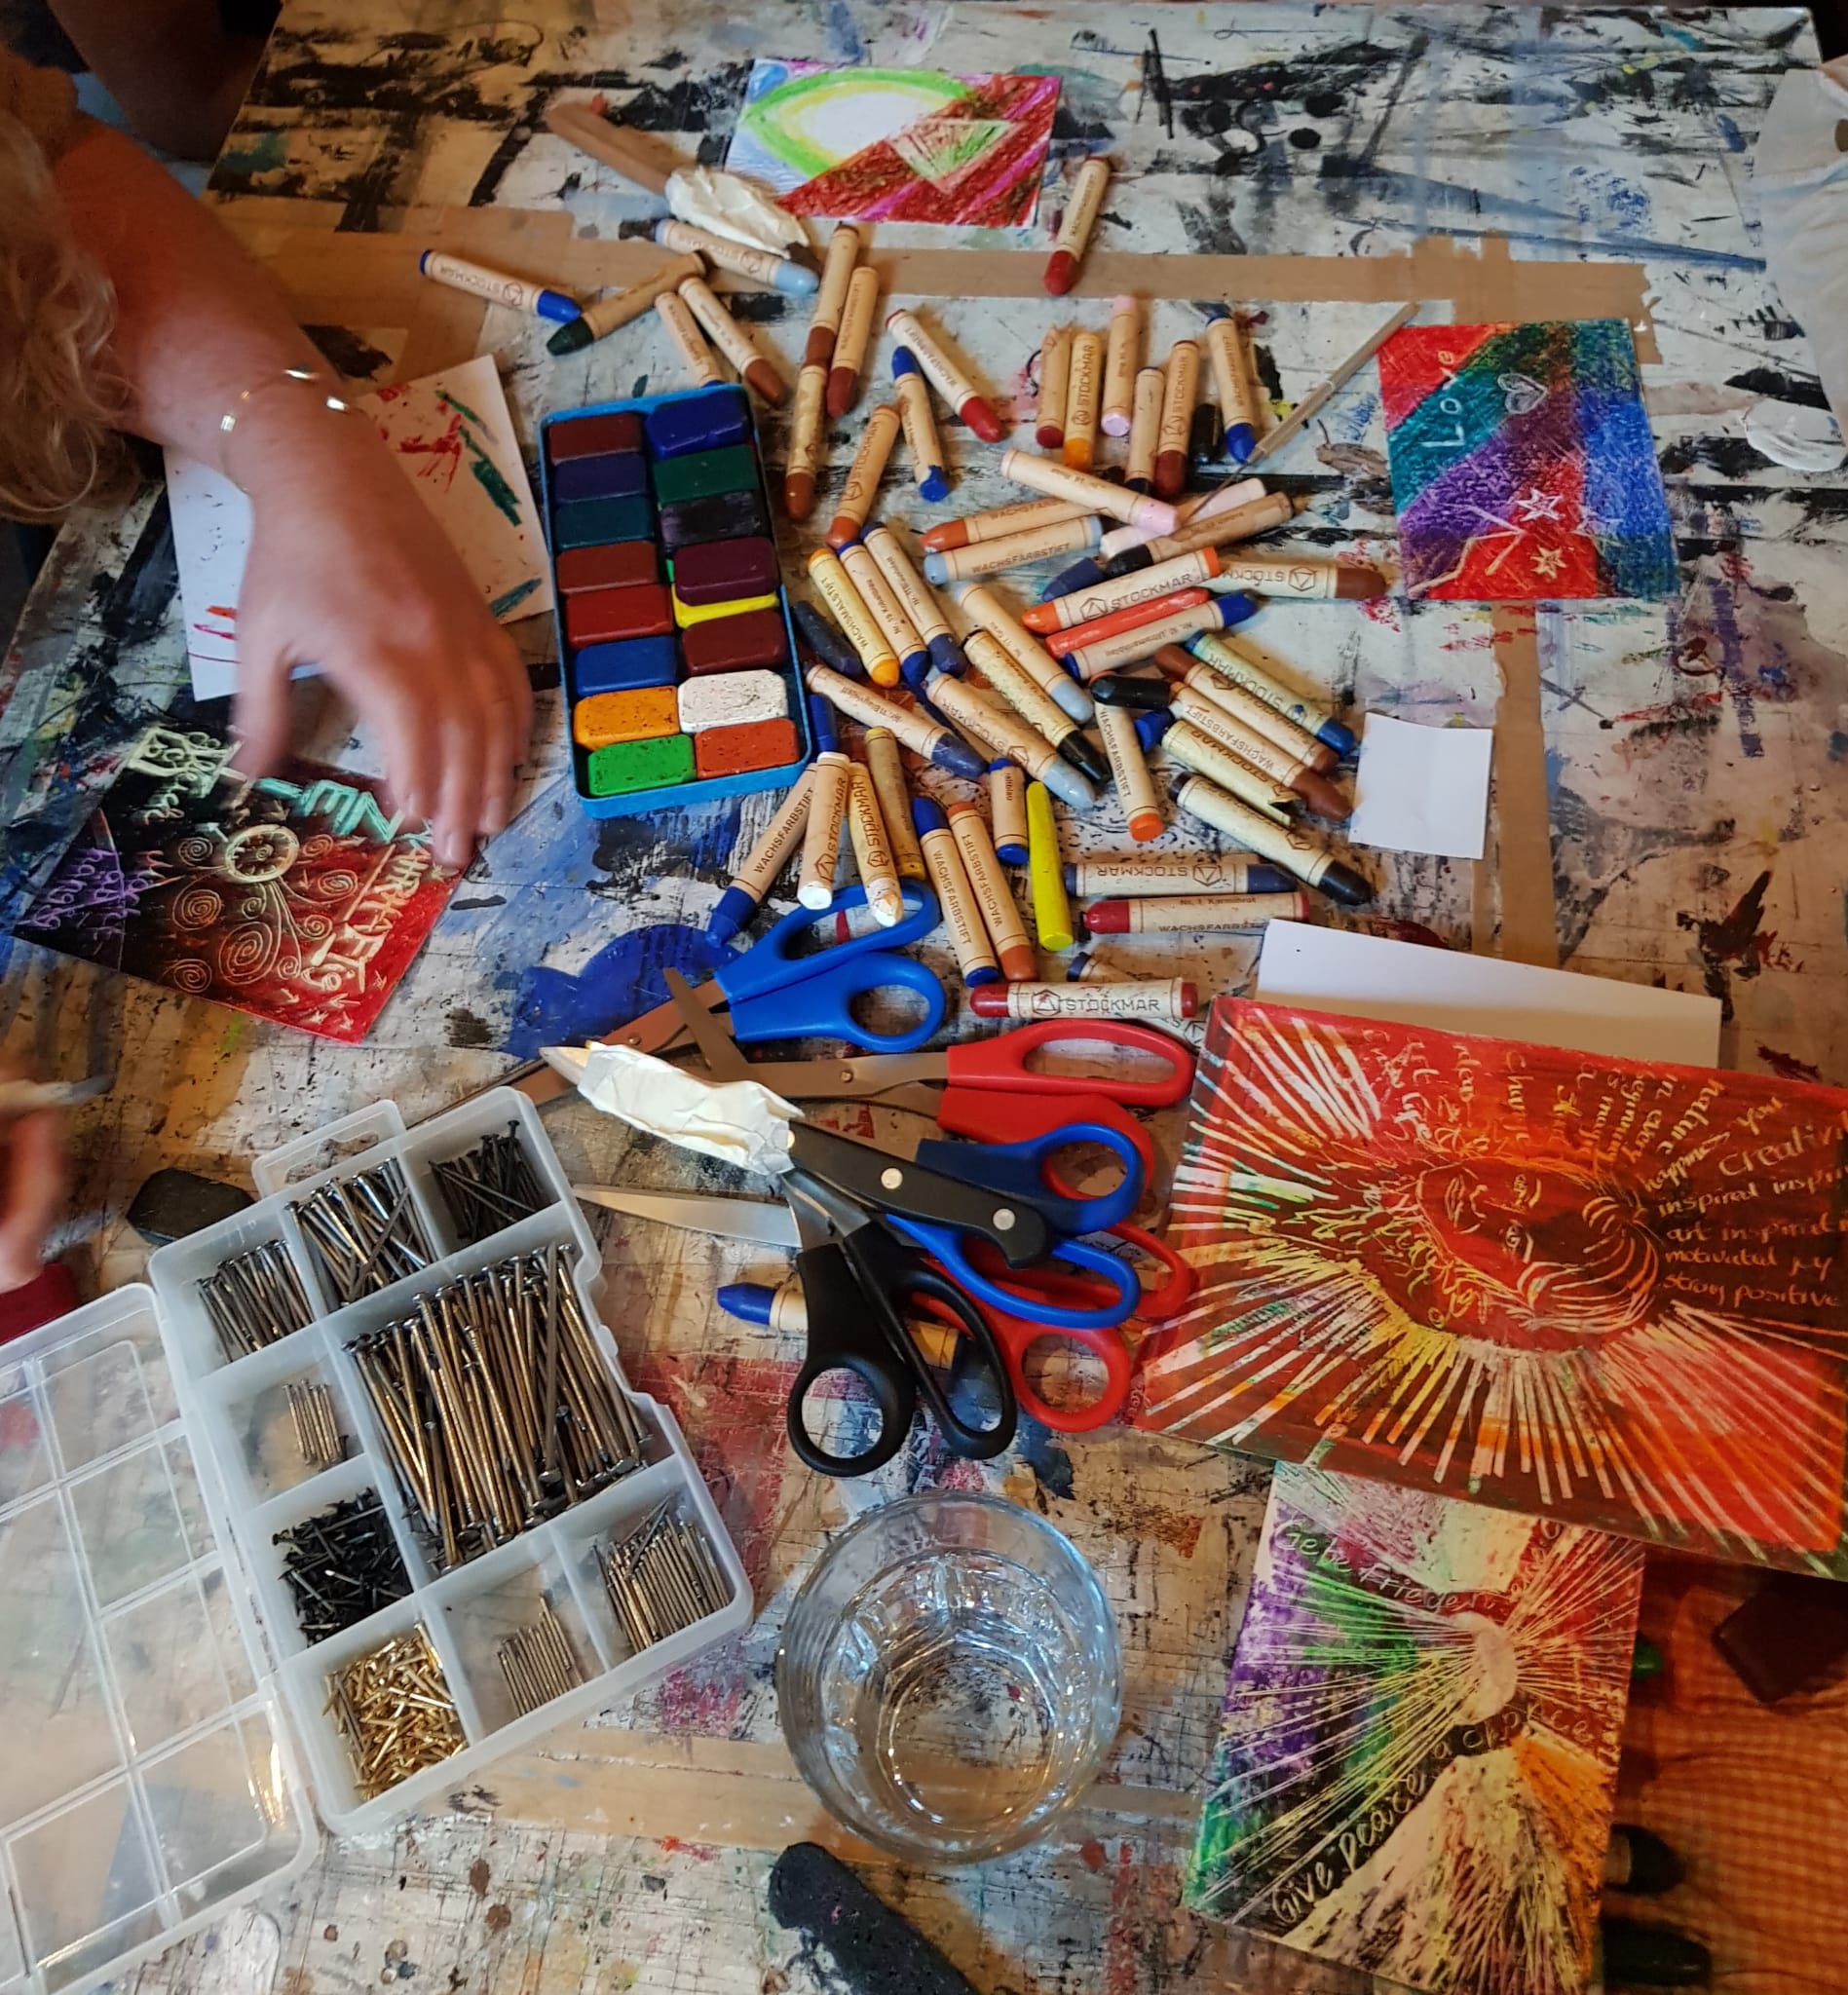 Auf einem Tisch liegen viele bunte Wachfarben, Scheren, ein Kasten mit Nägeln unterschiedlicher Größen sowie selbst gemalte Wachsbilder.